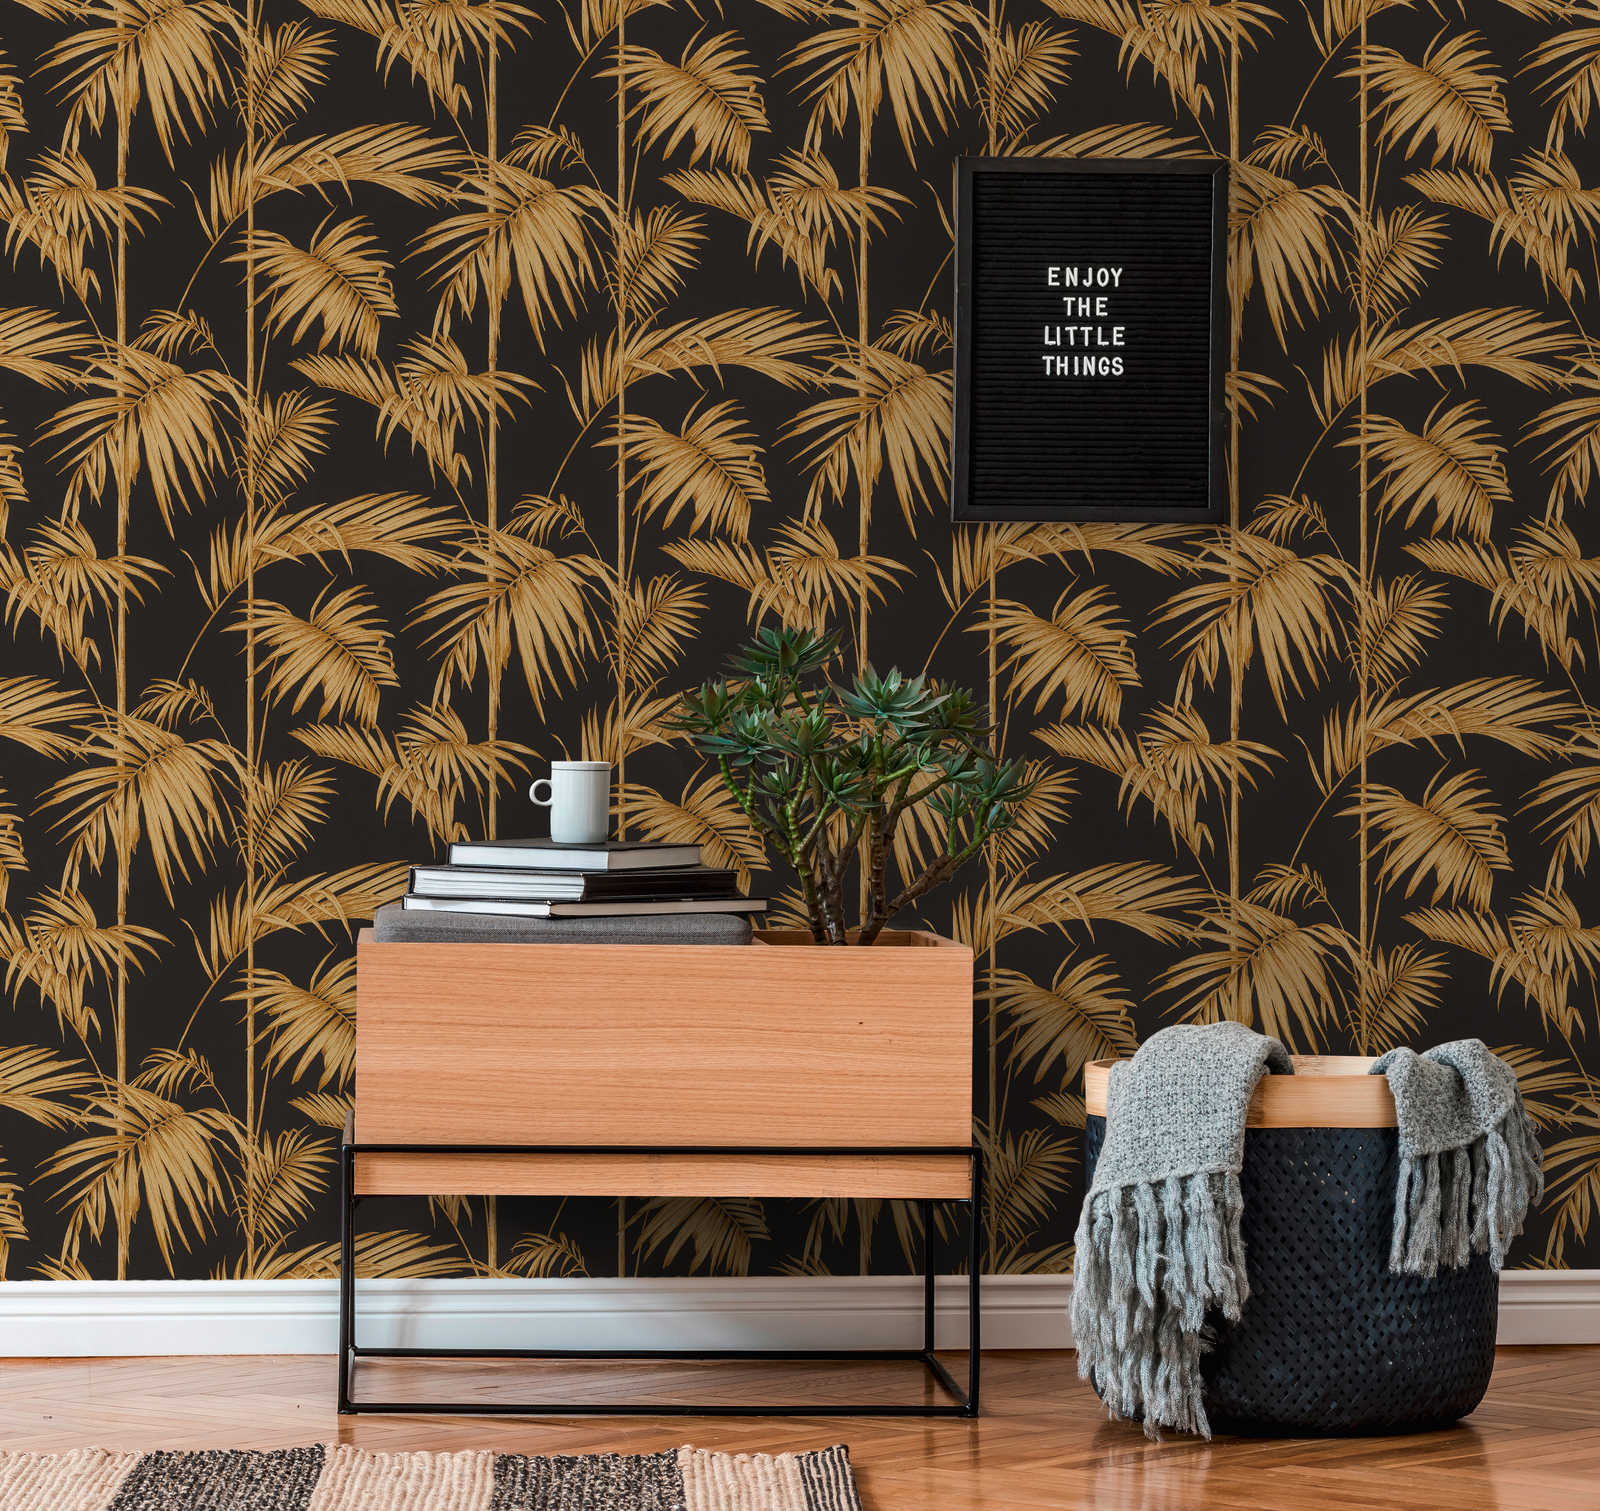             Papier peint naturel feuilles de palmier, bambou - or, noir, orange
        